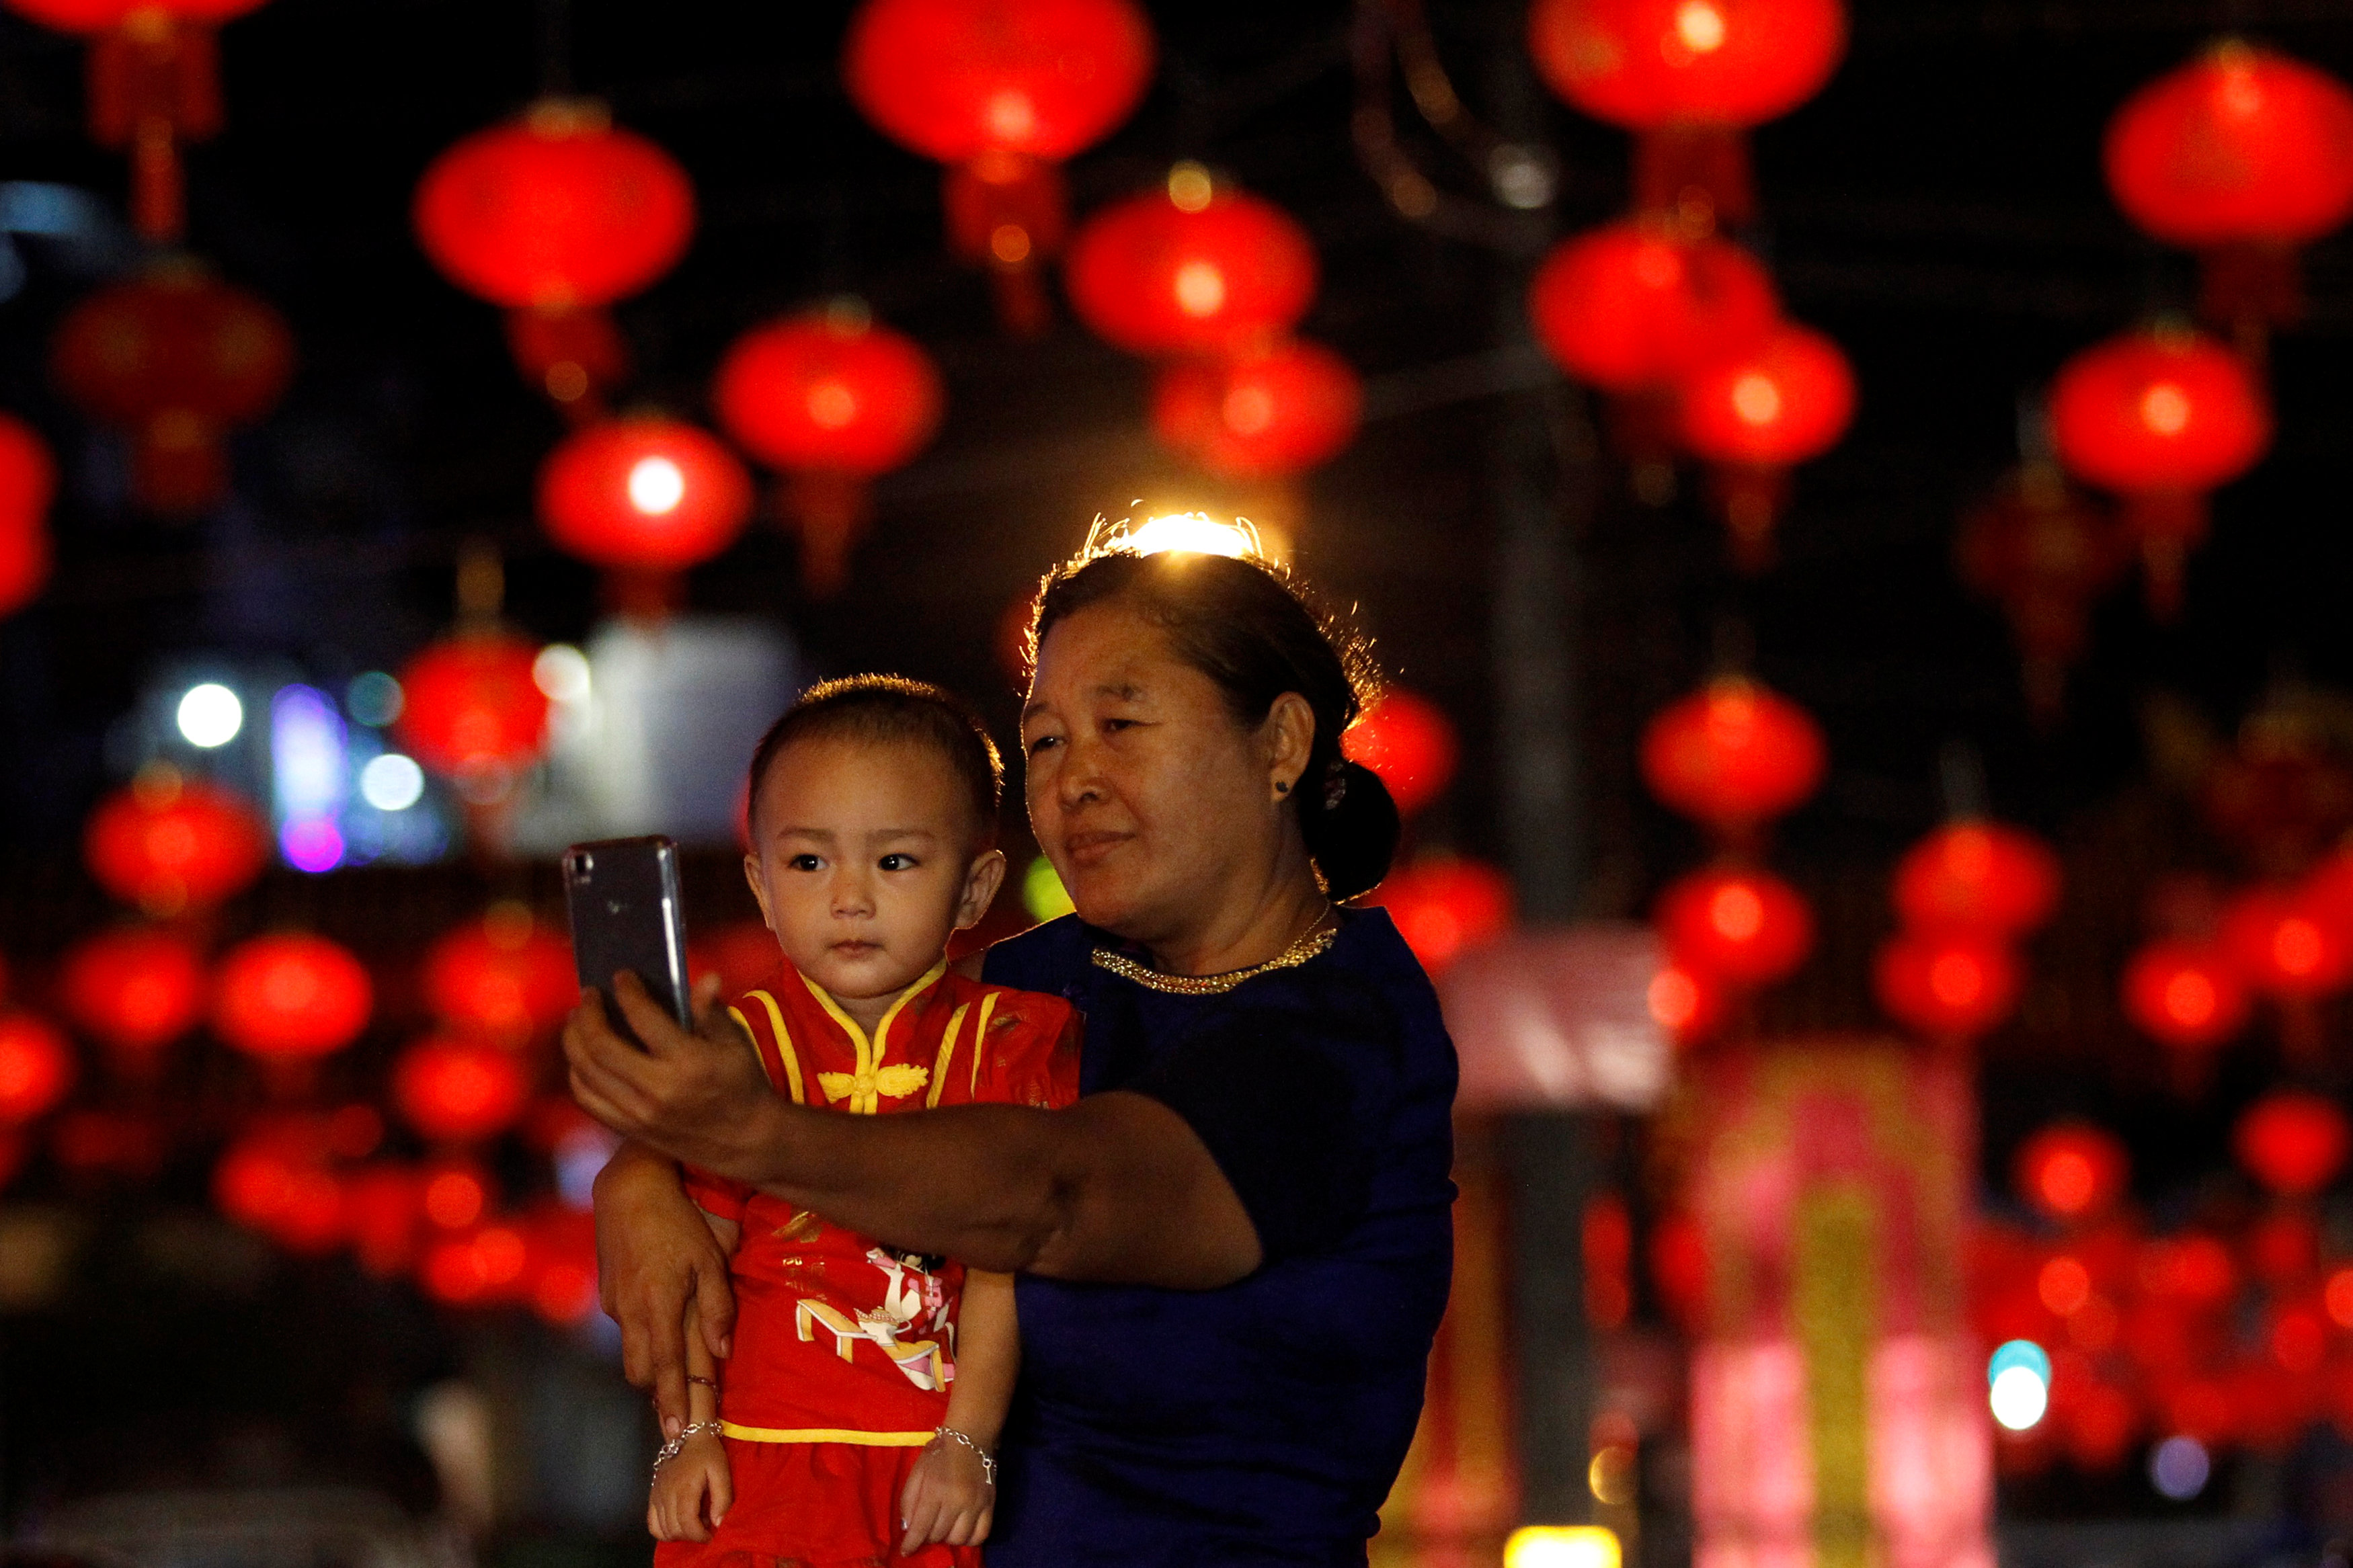 سيدة تلتقط صورة مع طفل خلال الاحتفال بالسنة الصينية الجديدة